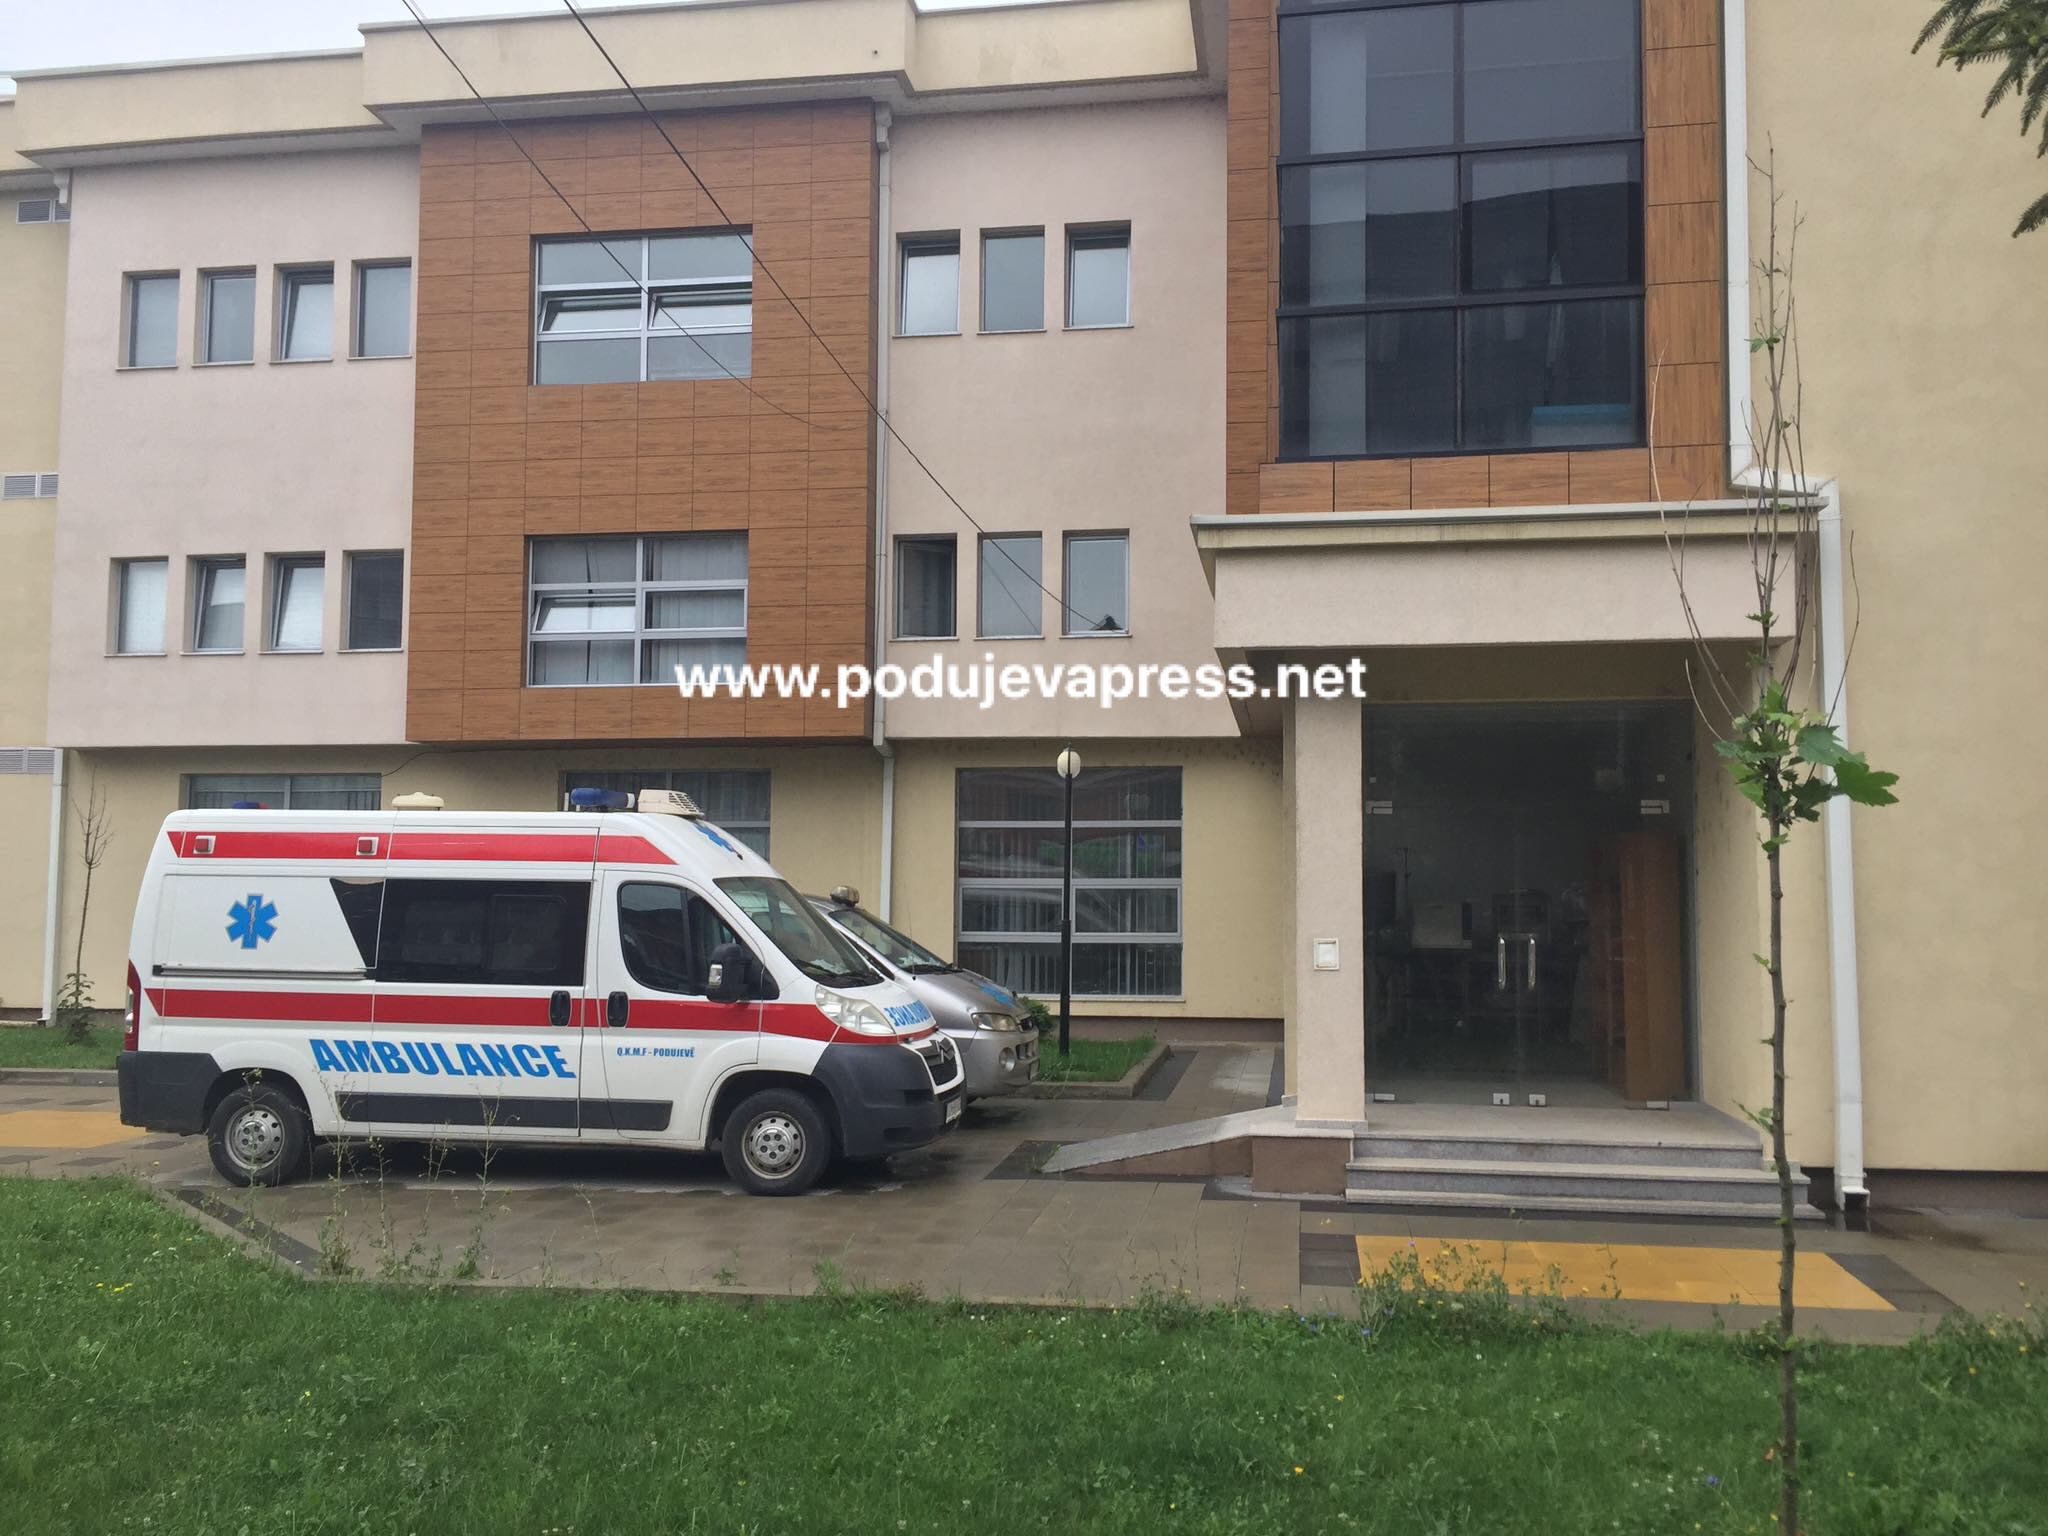  Katër të helmuar pas një ahengu në një restorant të Podujevës